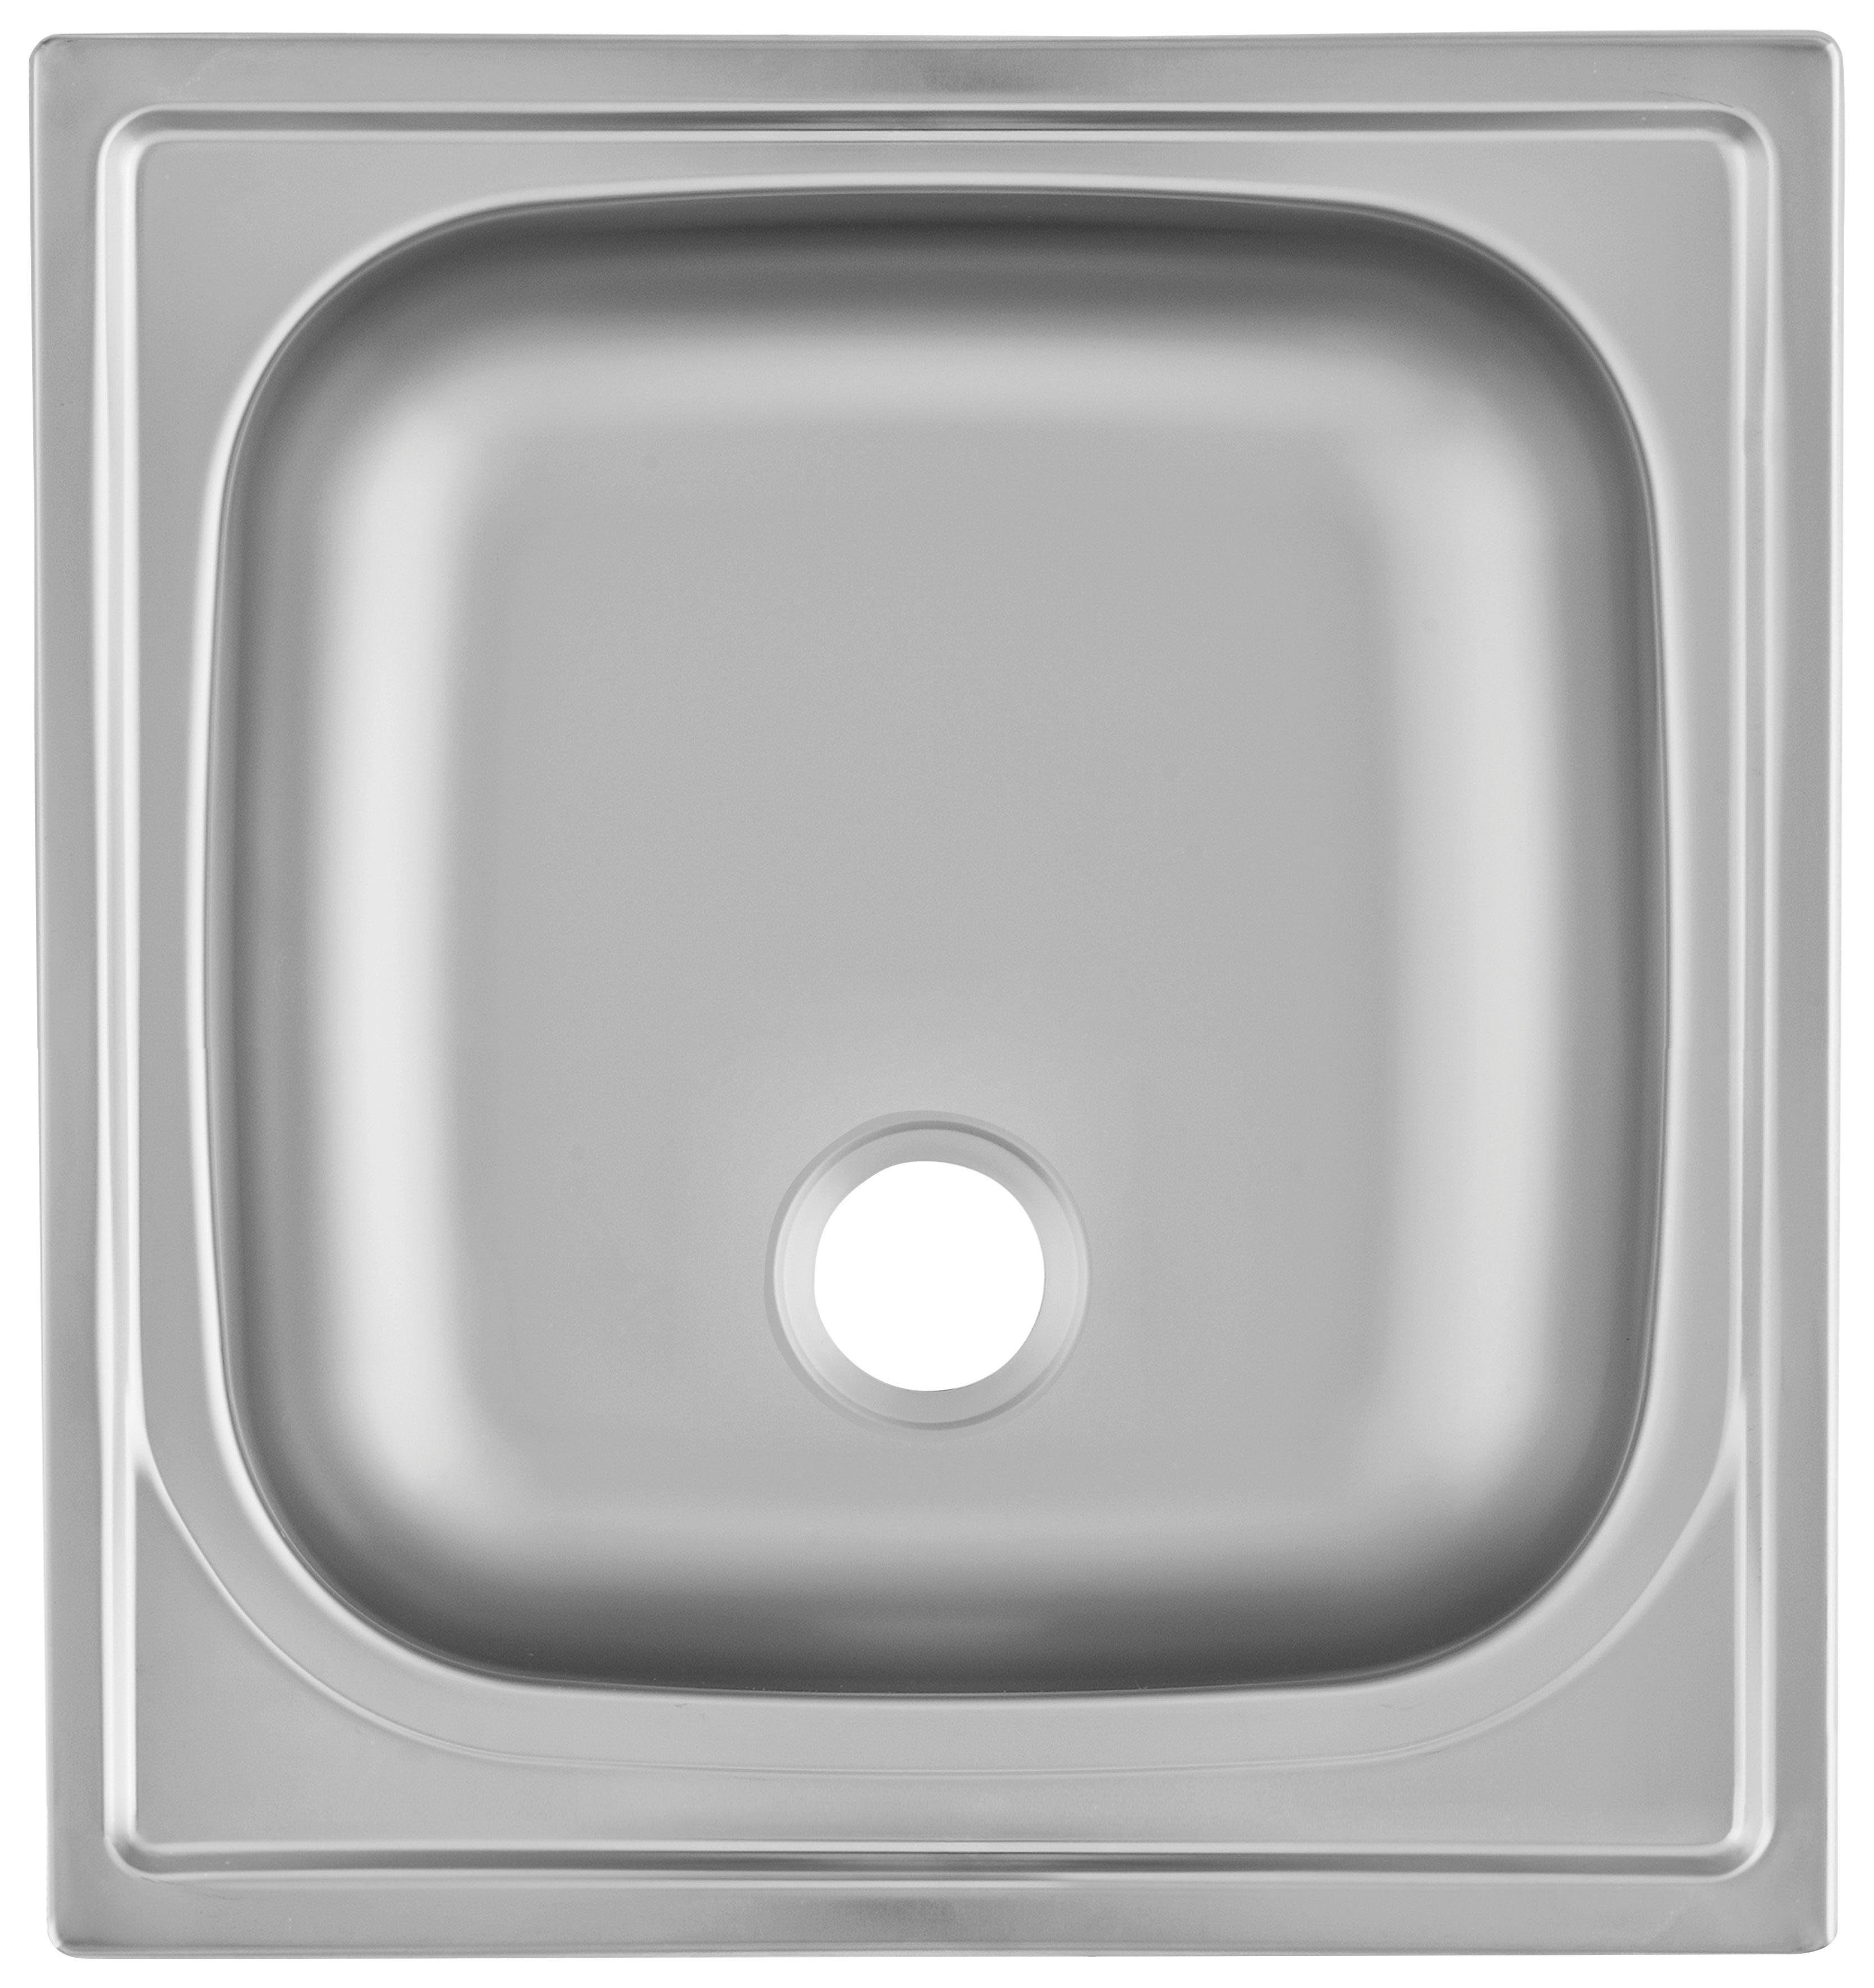 OPTIFIT Küchenzeile cm mit E-Geräten, 150 | Mini, Breite weiß/anthrazit/wildeichefarben weiß